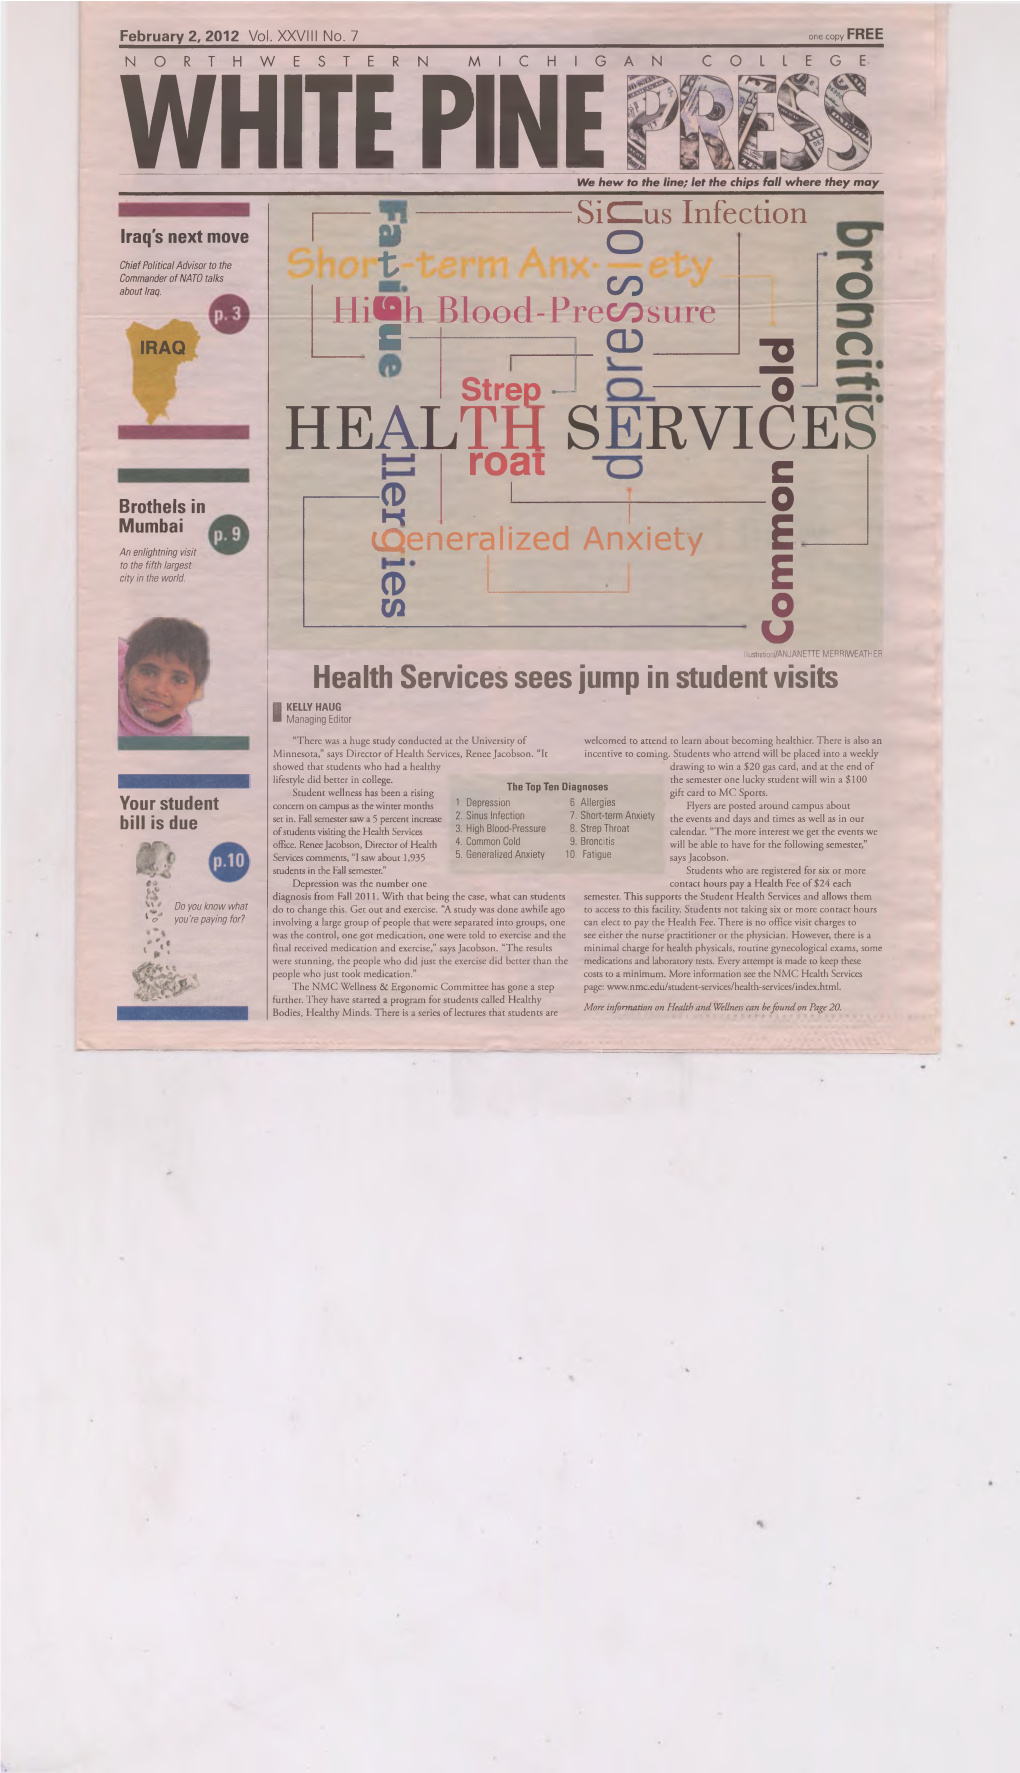 HEALTH SERVICES Roai C I Brothels in ------° O Mumbai K - I